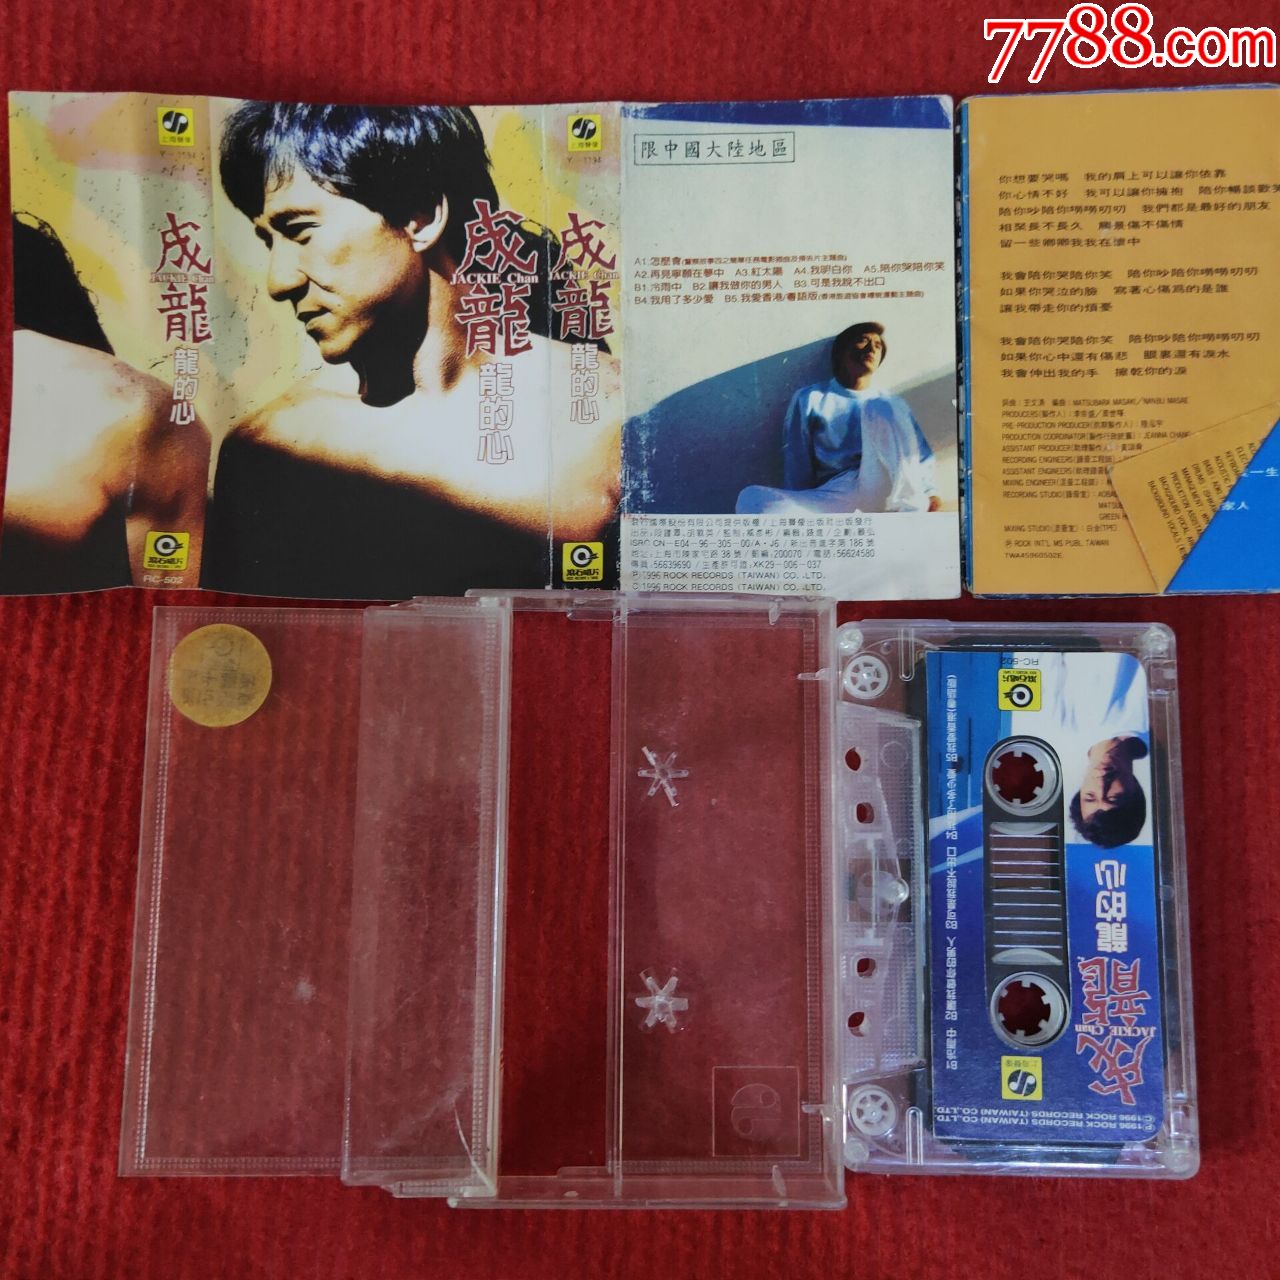 原装正版磁带成龙专辑龙的心上海声像出版社出版发行